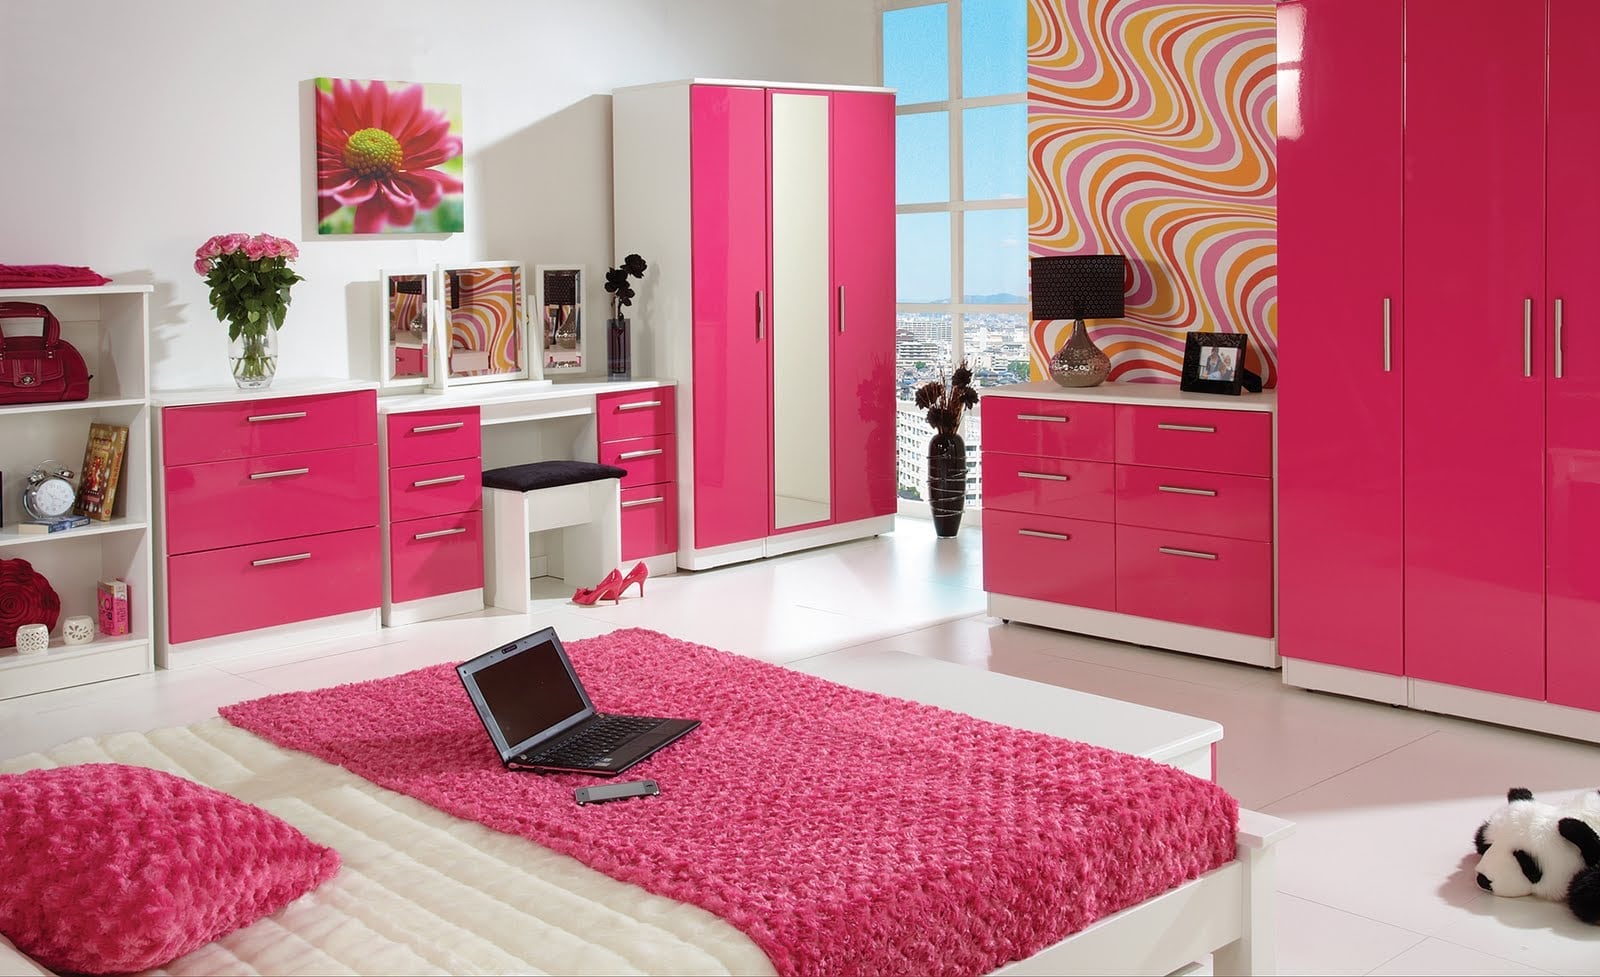 Teratas Desain Rumah Modern Nuansa Pink 99 Di Inspirasi Dekorasi Rumah Kecil dengan Desain Rumah Modern Nuansa Pink